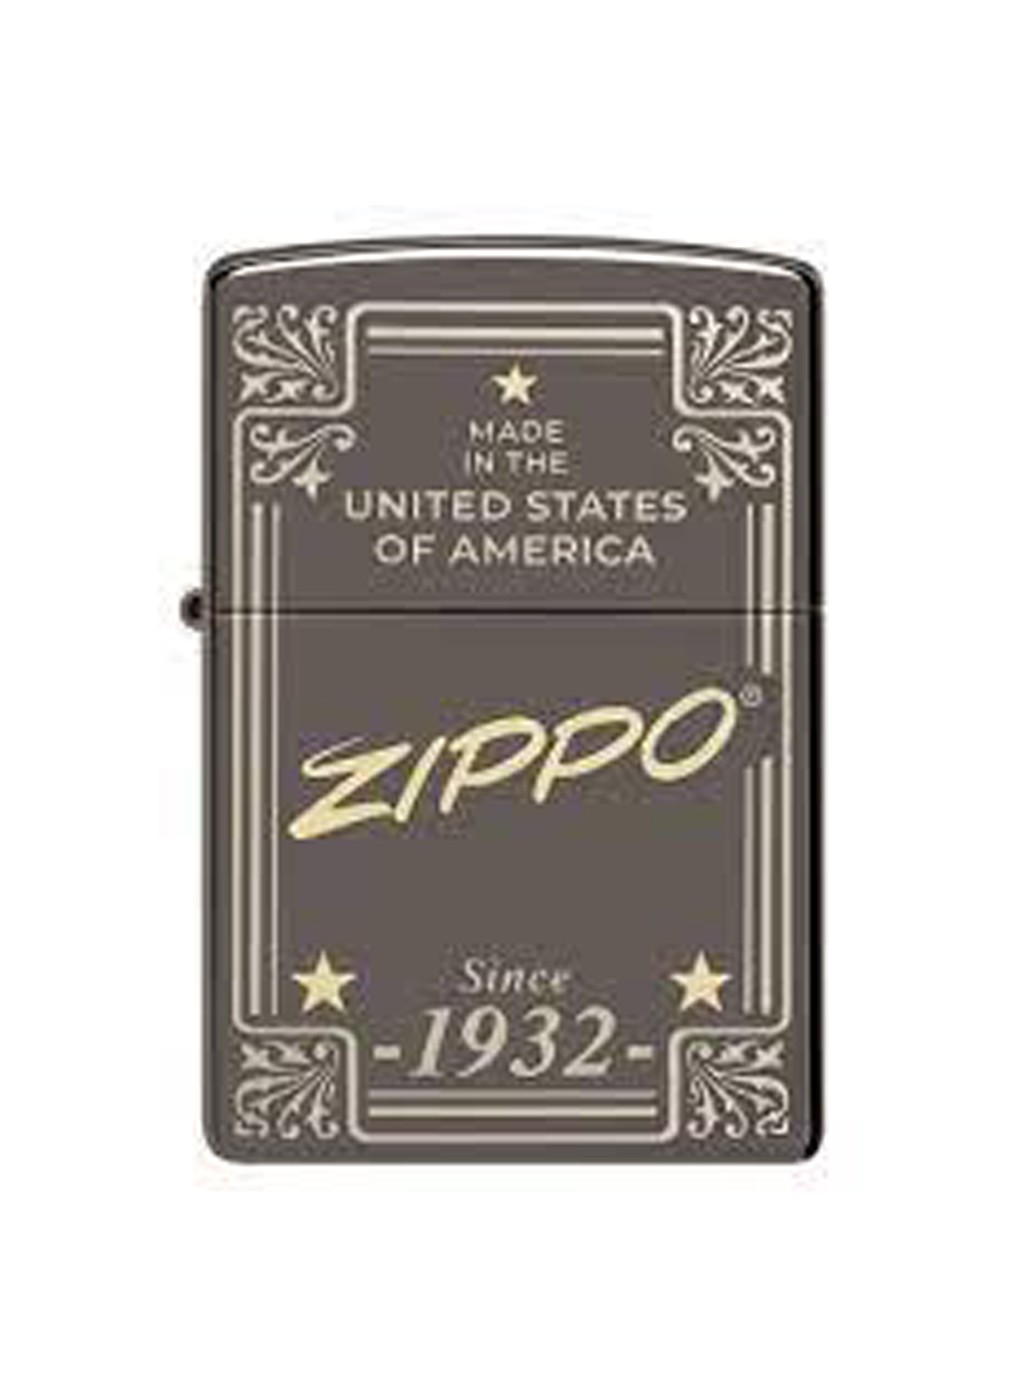 Accendino Zippo Framed Design - Tabaccheria Corti Lecco - Online Shop